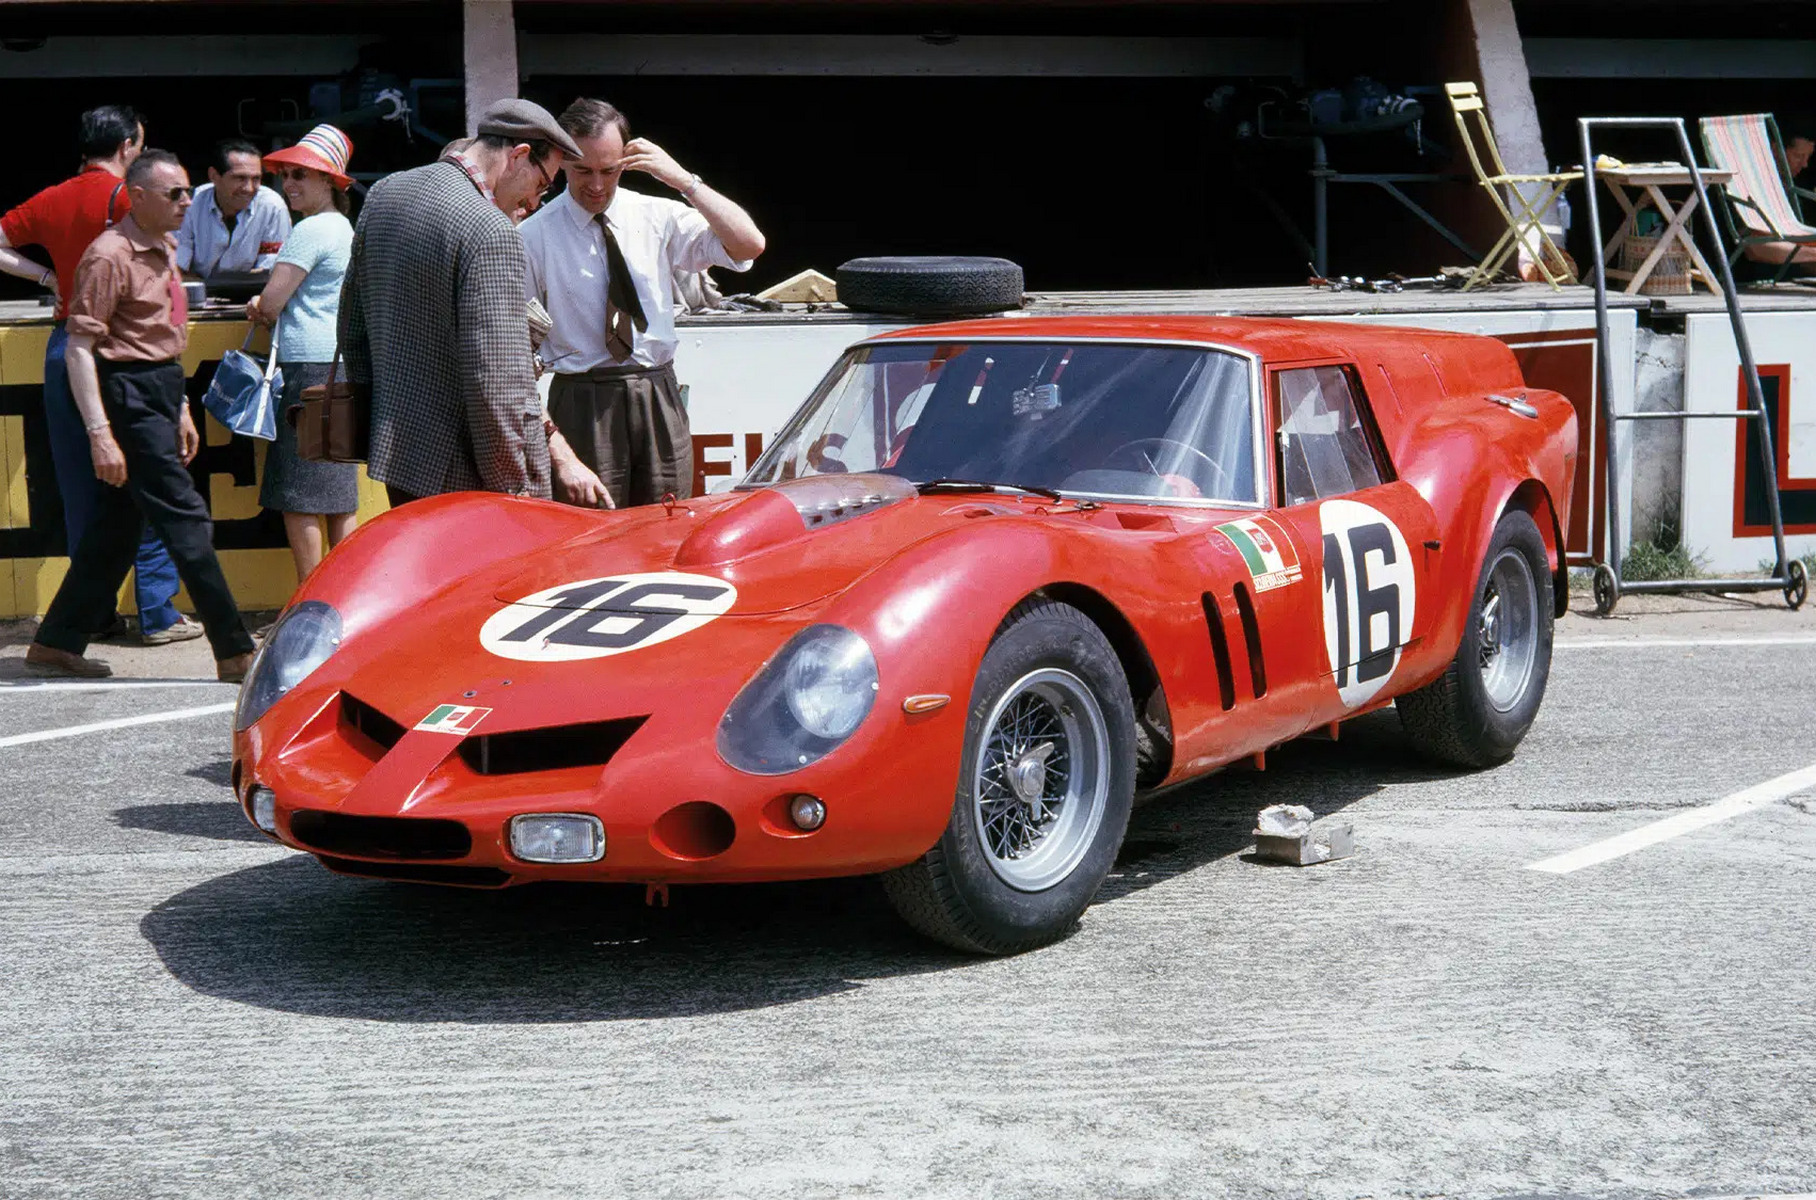 Построенный для графа Вольпи Ferrari 250 «Breadvan» в Ле-Мане в 1962 году. Тогда на нём выступали итальянец Карло Мария Абато и англичанин Колин Дэвис. Их экипаж шёл на седьмом месте, опережая гонщиков на «настоящих» Ferrari 250 GTO, но сошёл всего через три часа гонки из-за поломки карданного вала